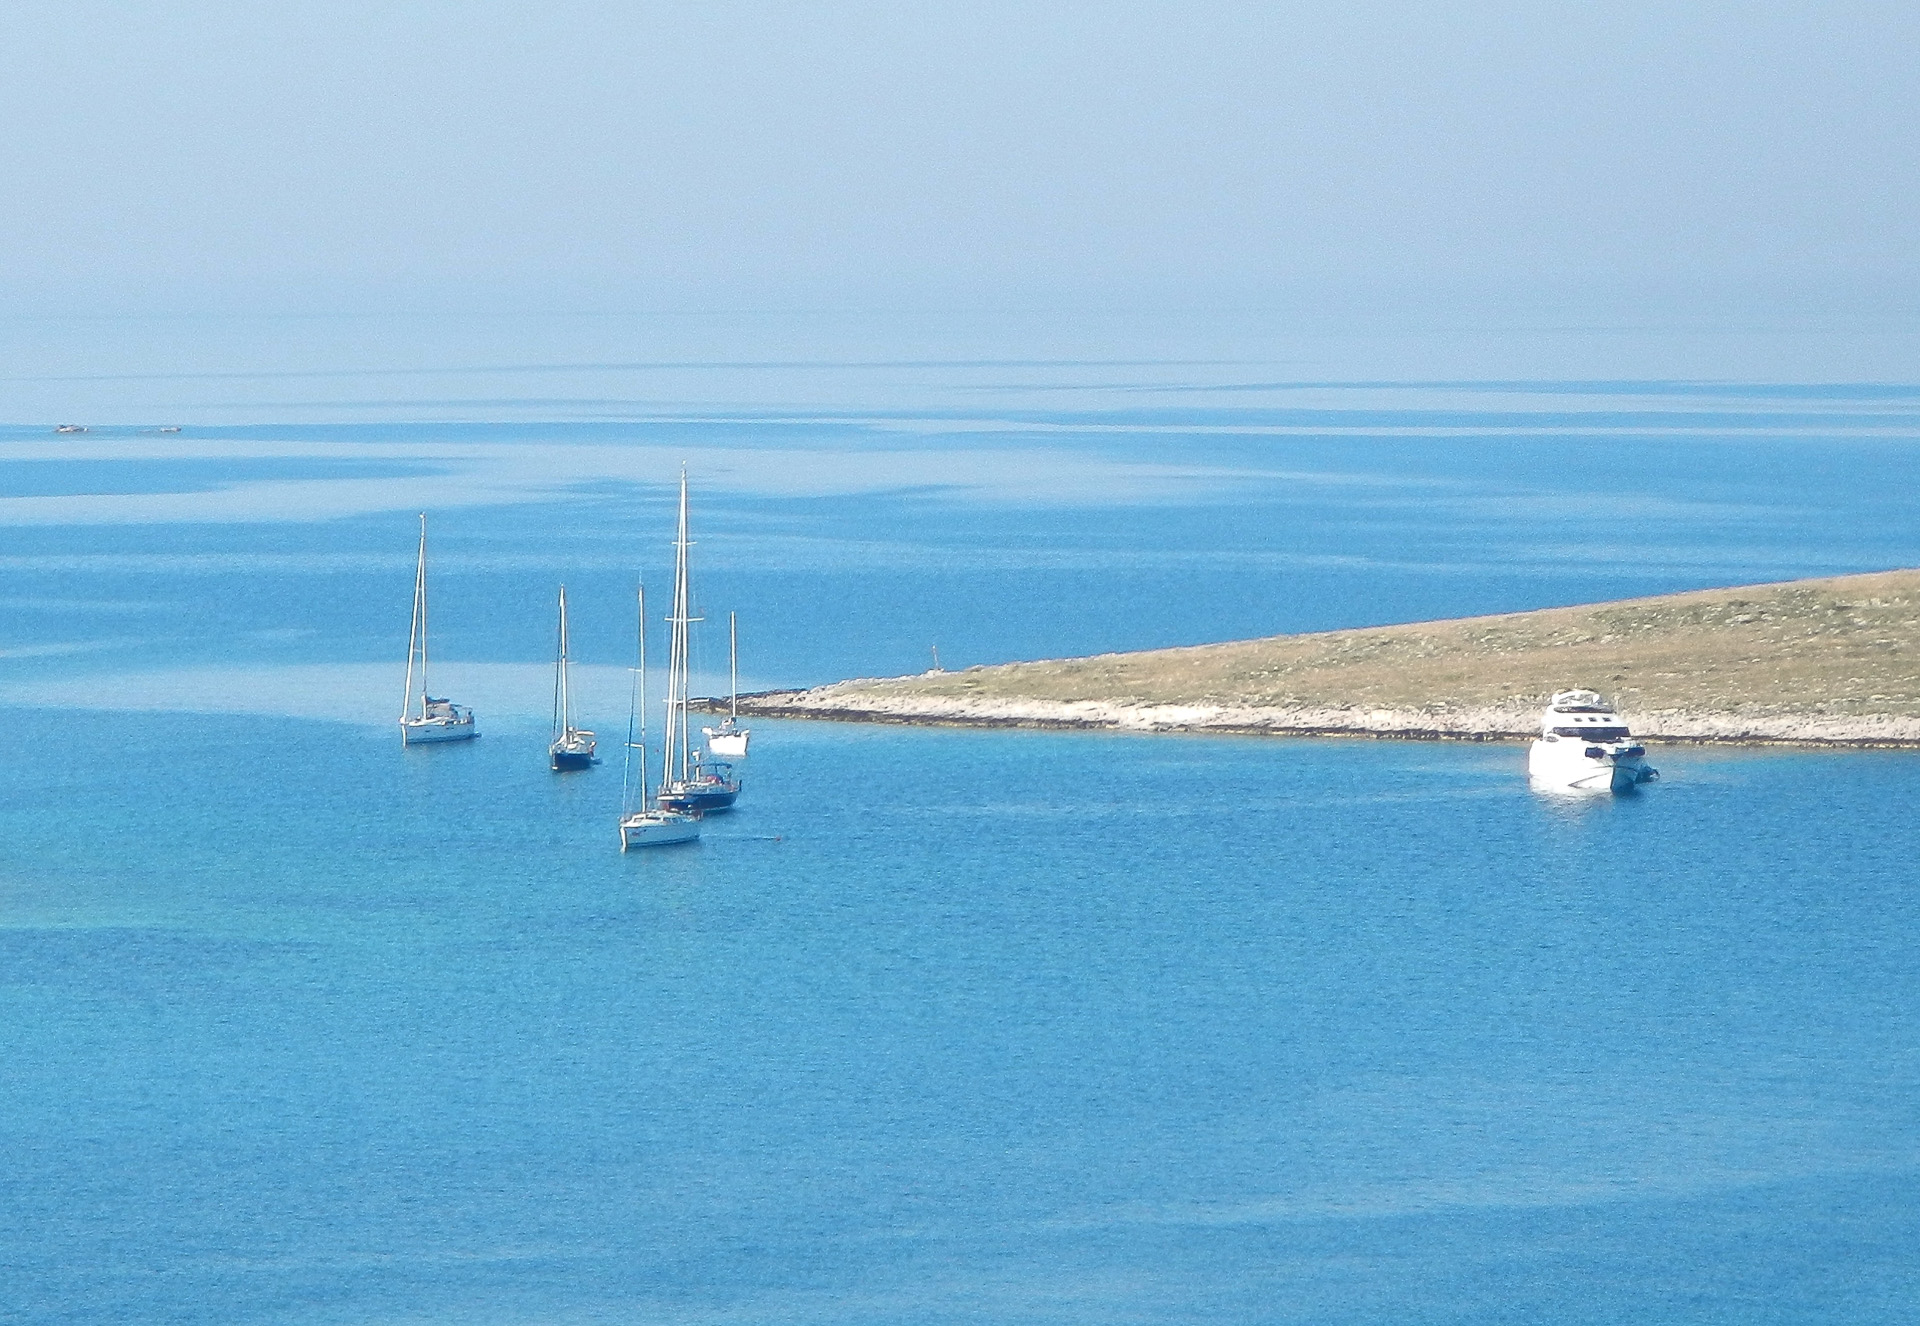 Auch in der südlichen Bucht der Insel liegen einige Boote vor Anker bzw. an der Boje...